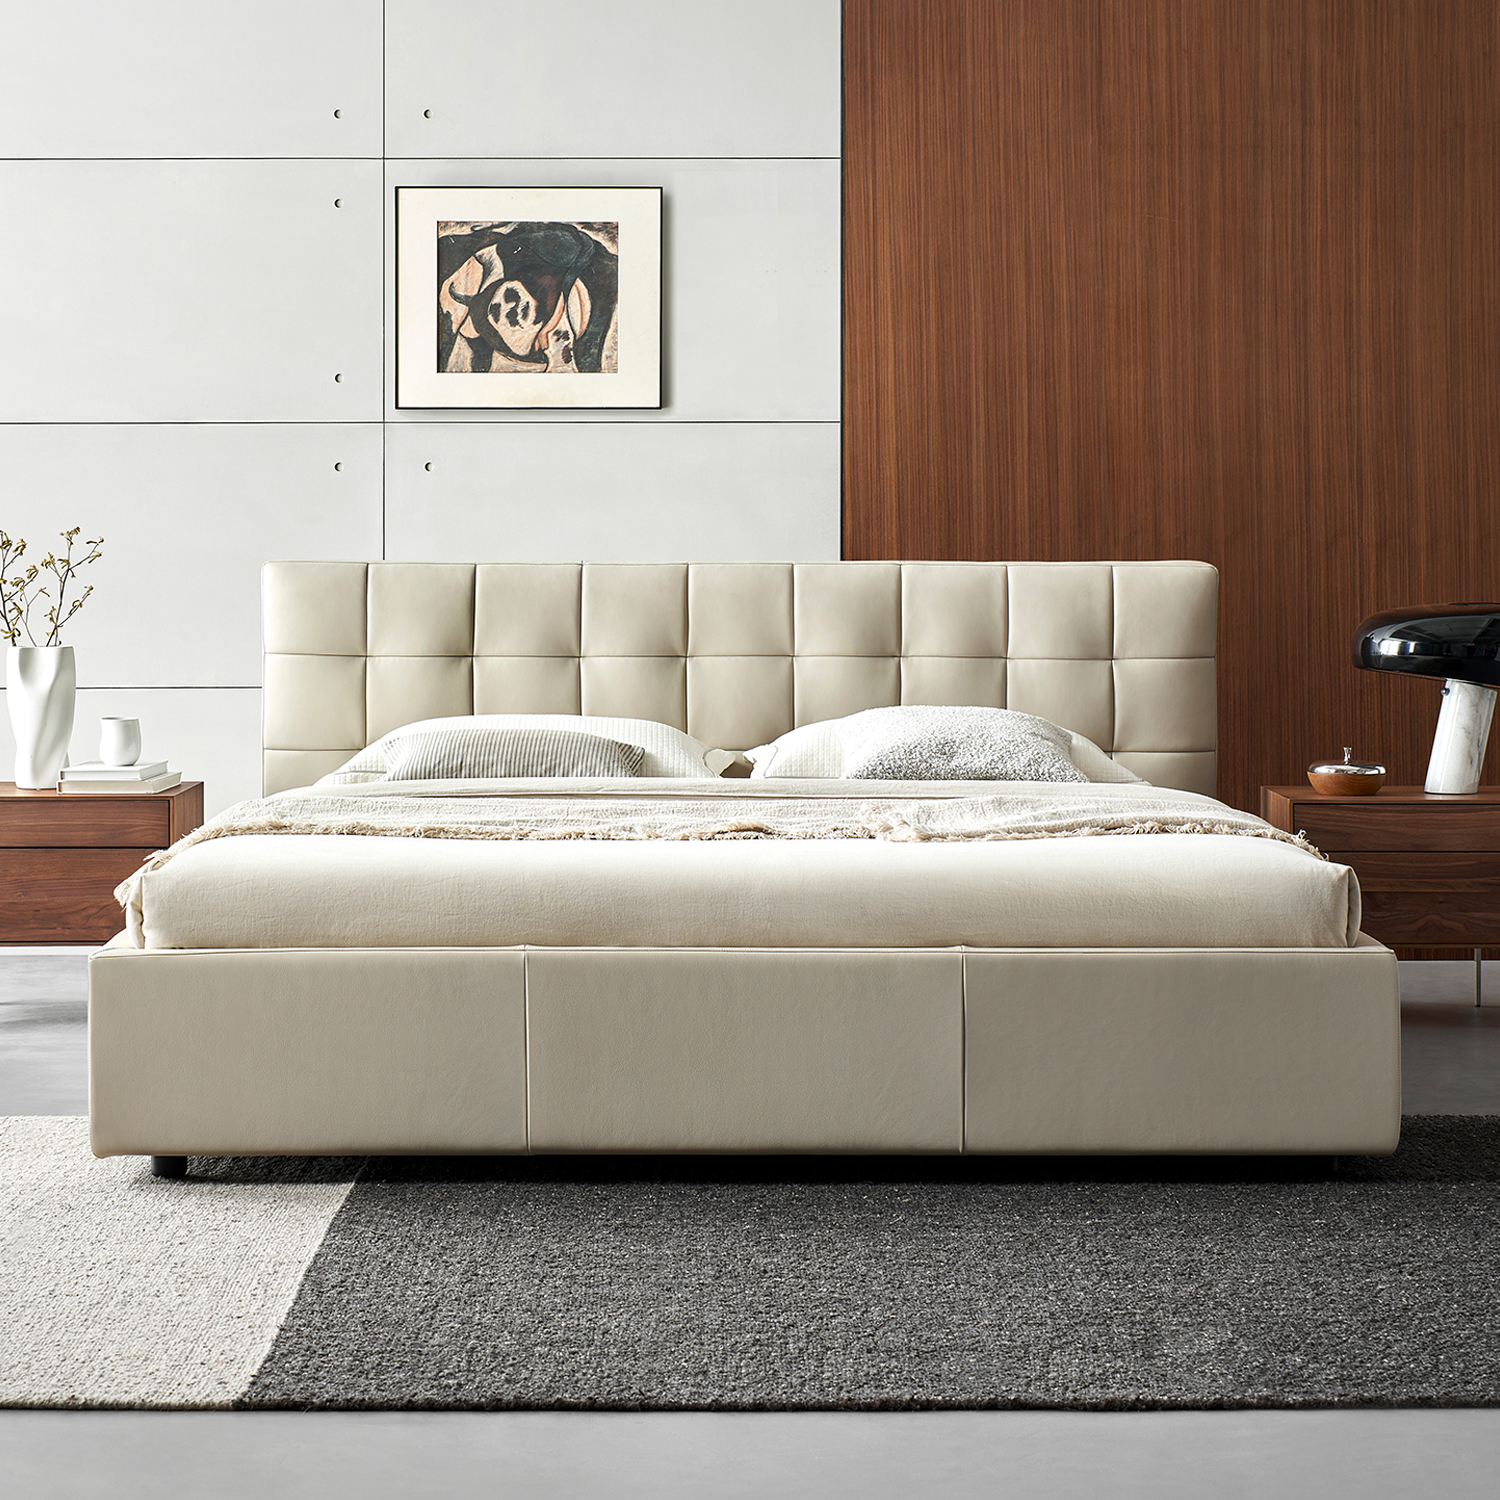 Lenos Modern Bedroom Beige Nappa Leather Bed Frames